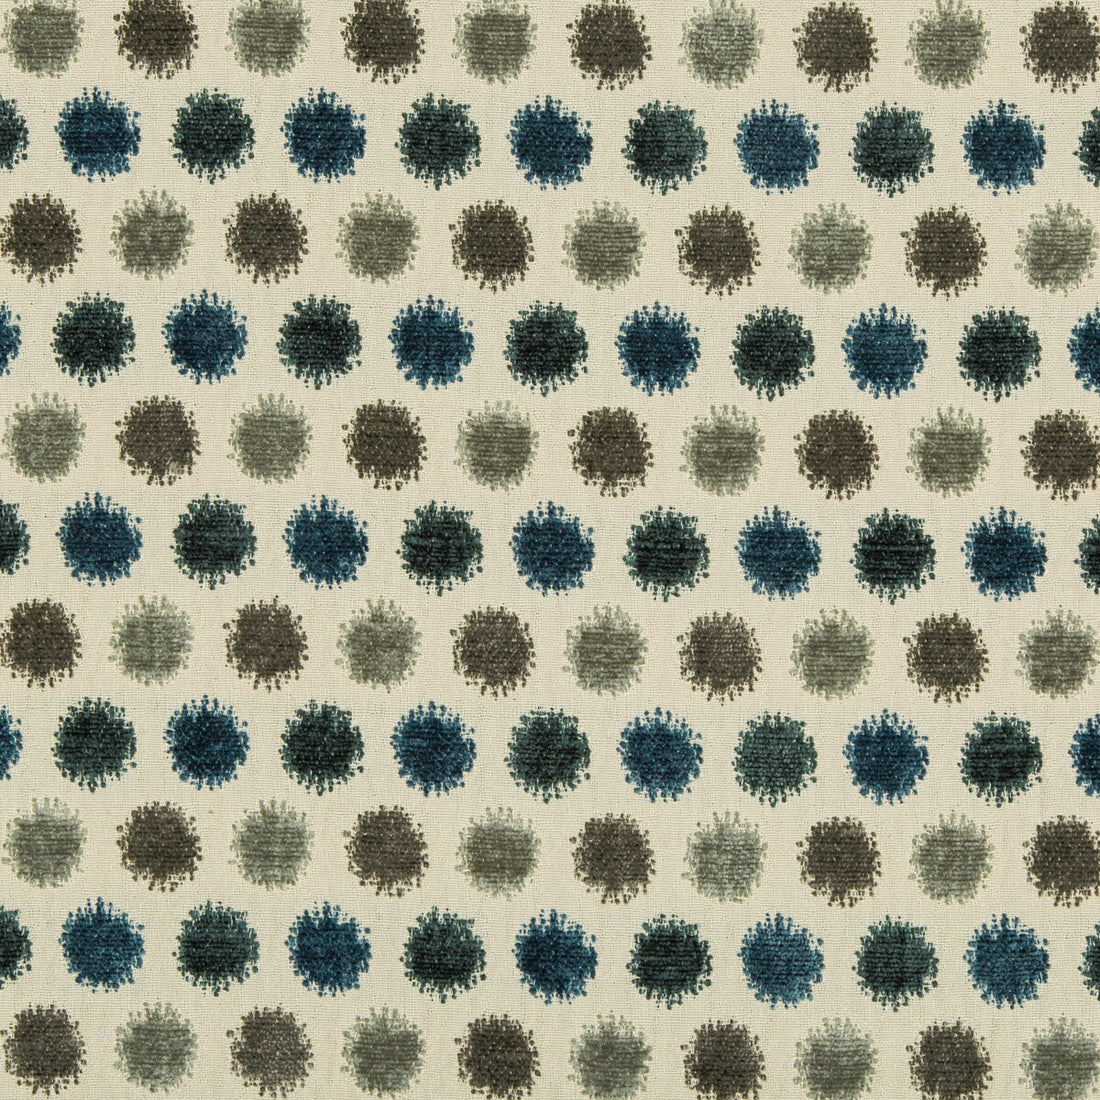 Kravet Design fabric in 35705-1635 color - pattern 35705.1635.0 - by Kravet Design